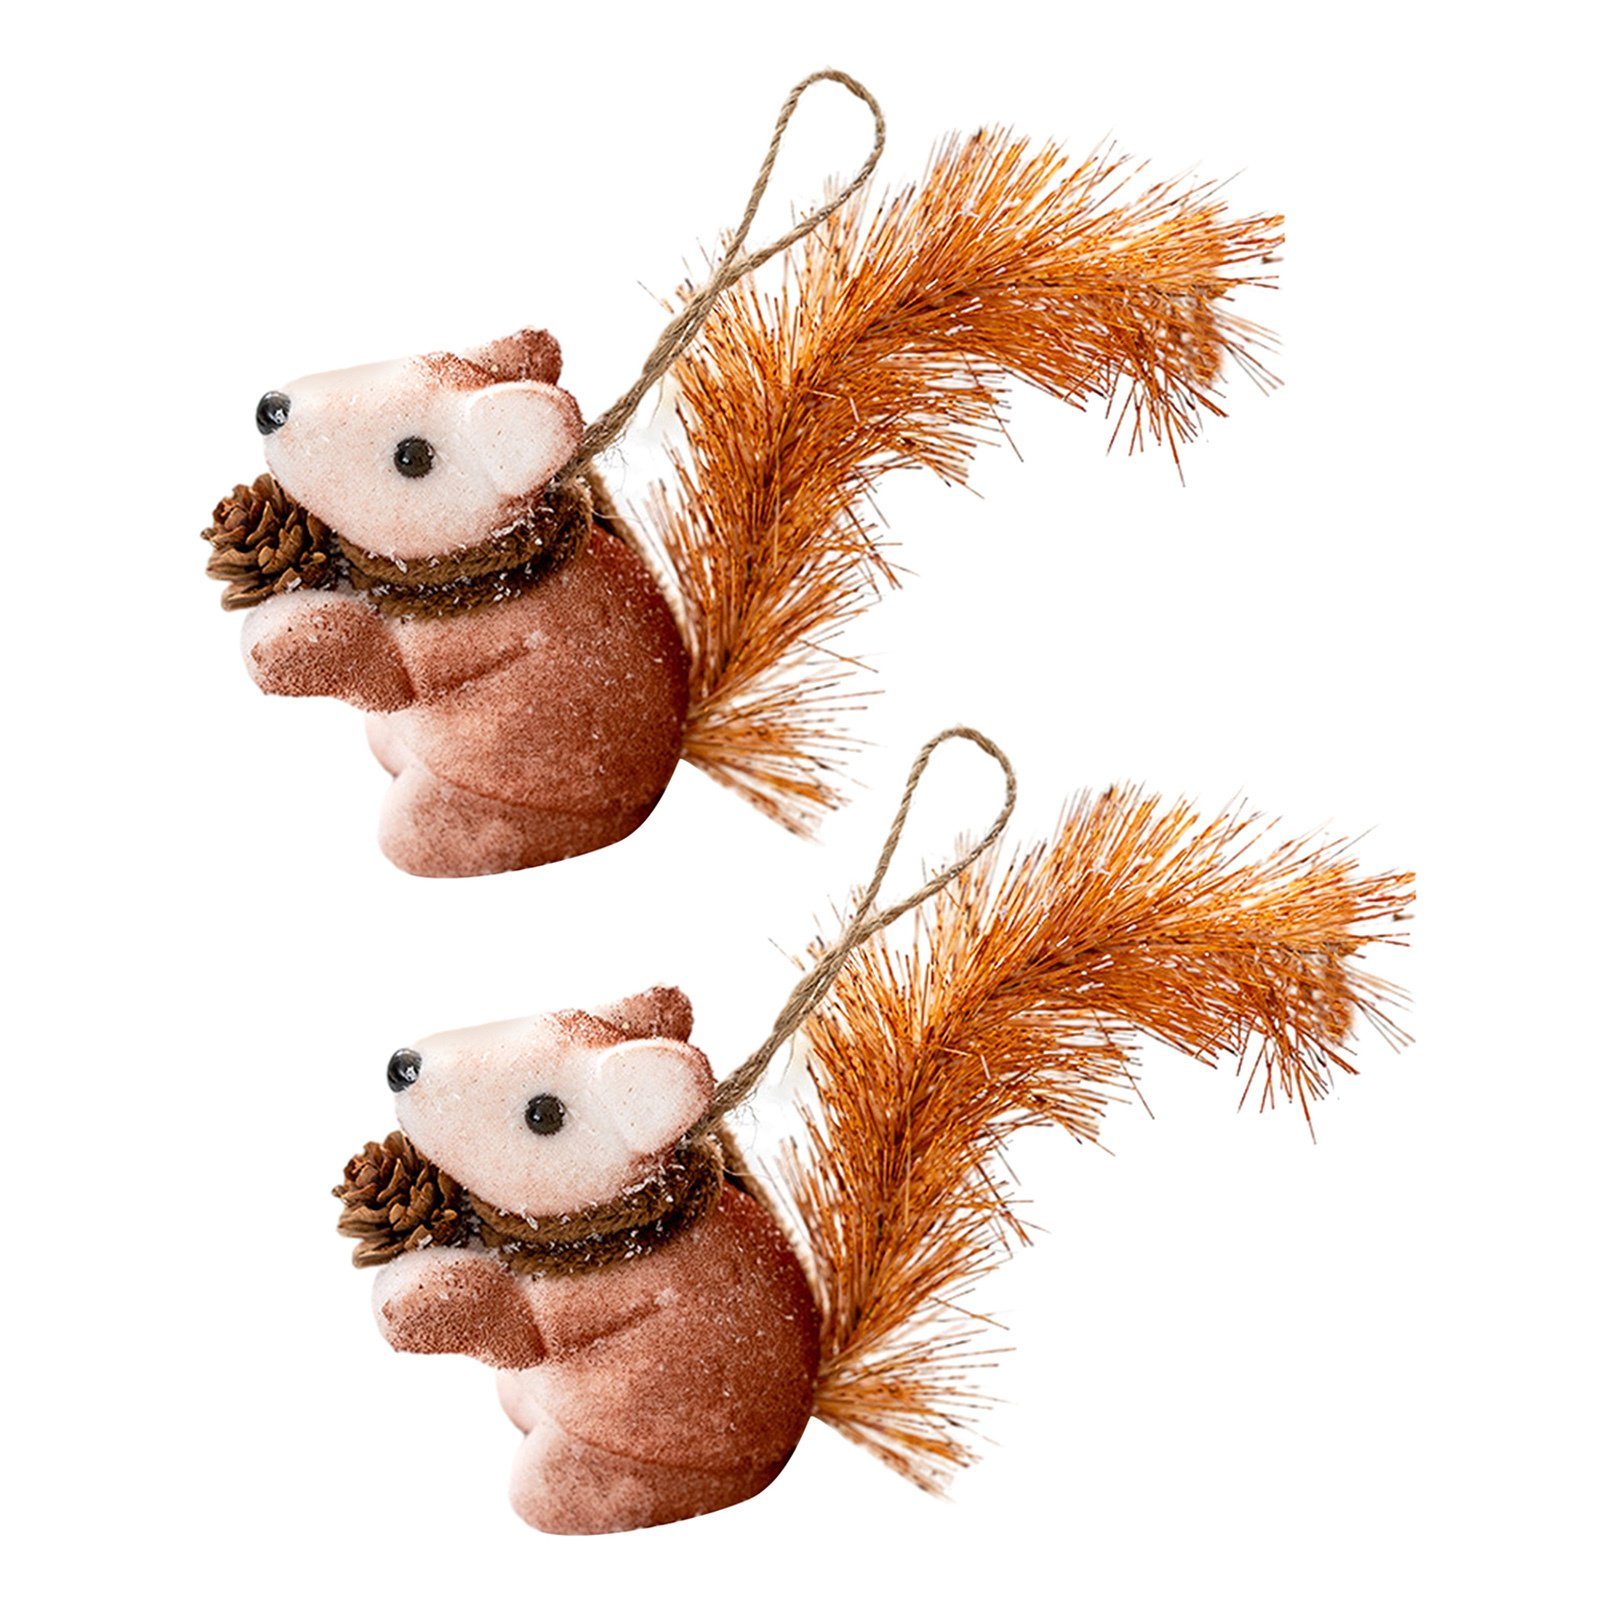 Eichhörnchen-Spielzeug-Anhänger 2 braun Christbaumschmuck Blusmart 2a Stück Niedliche Für Den